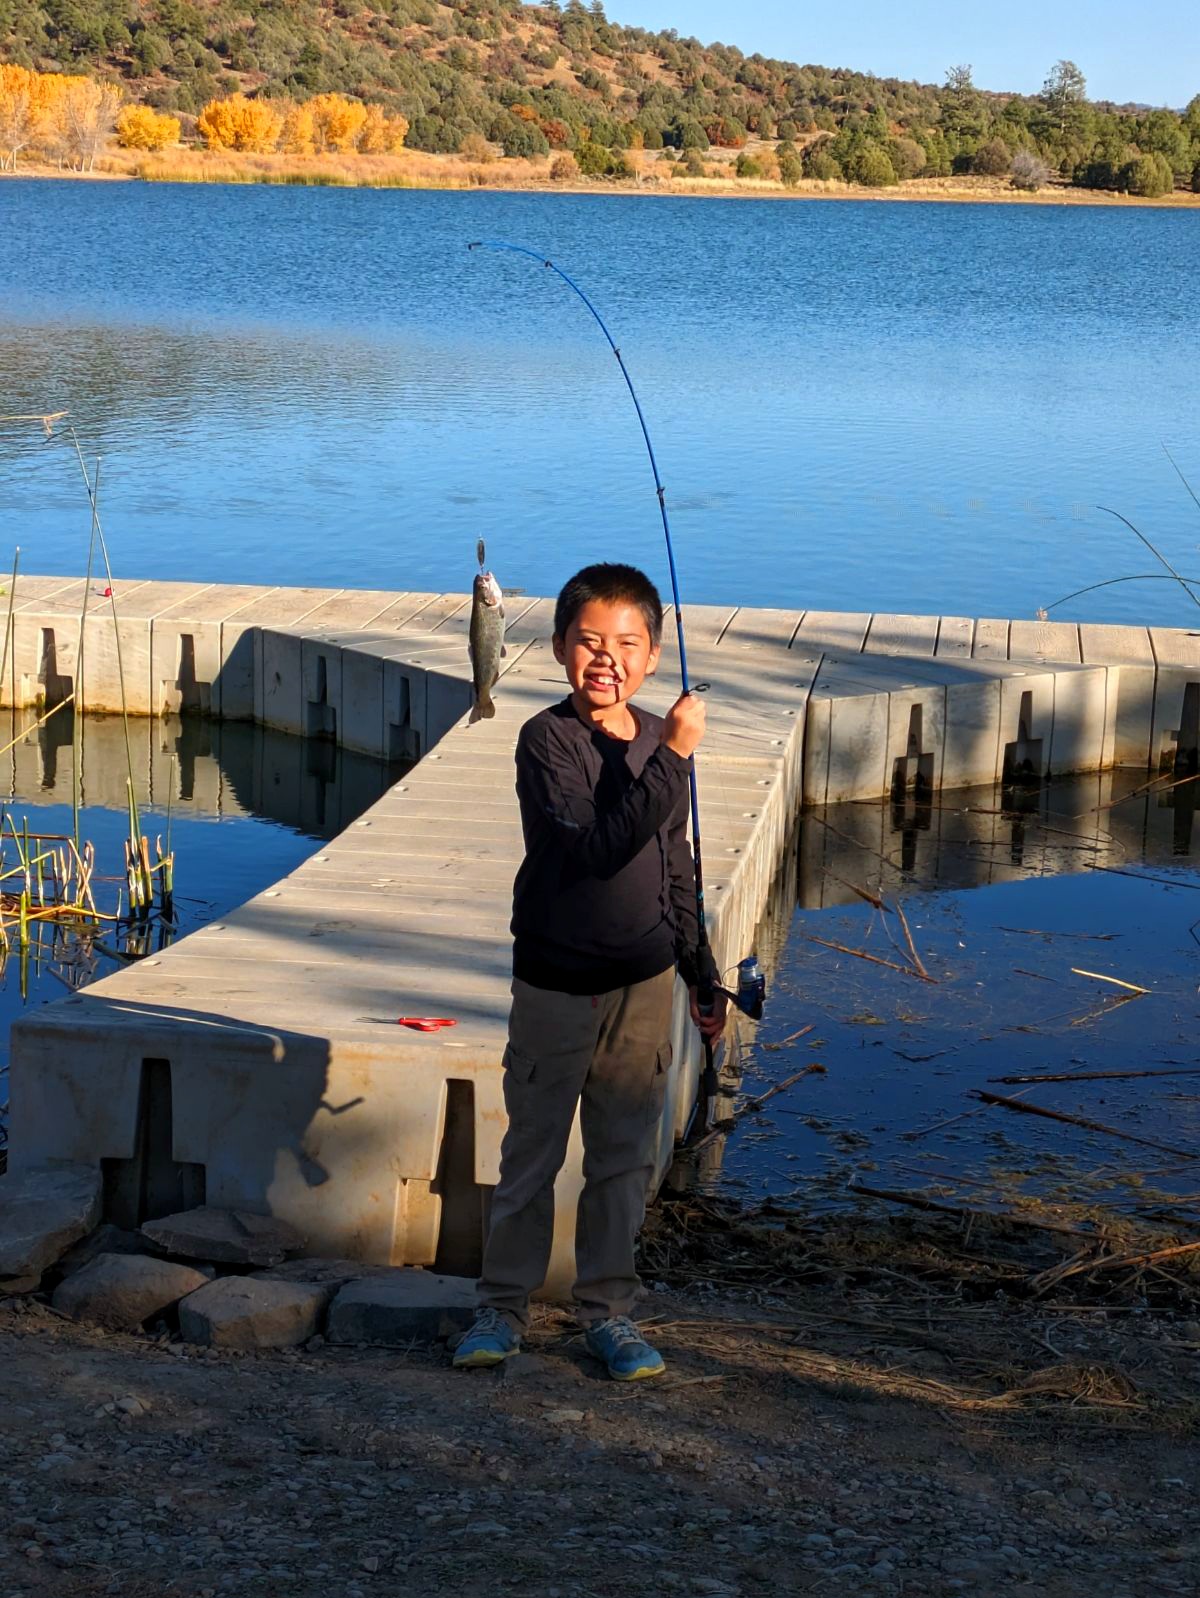 Jicarilla Fishing Blog